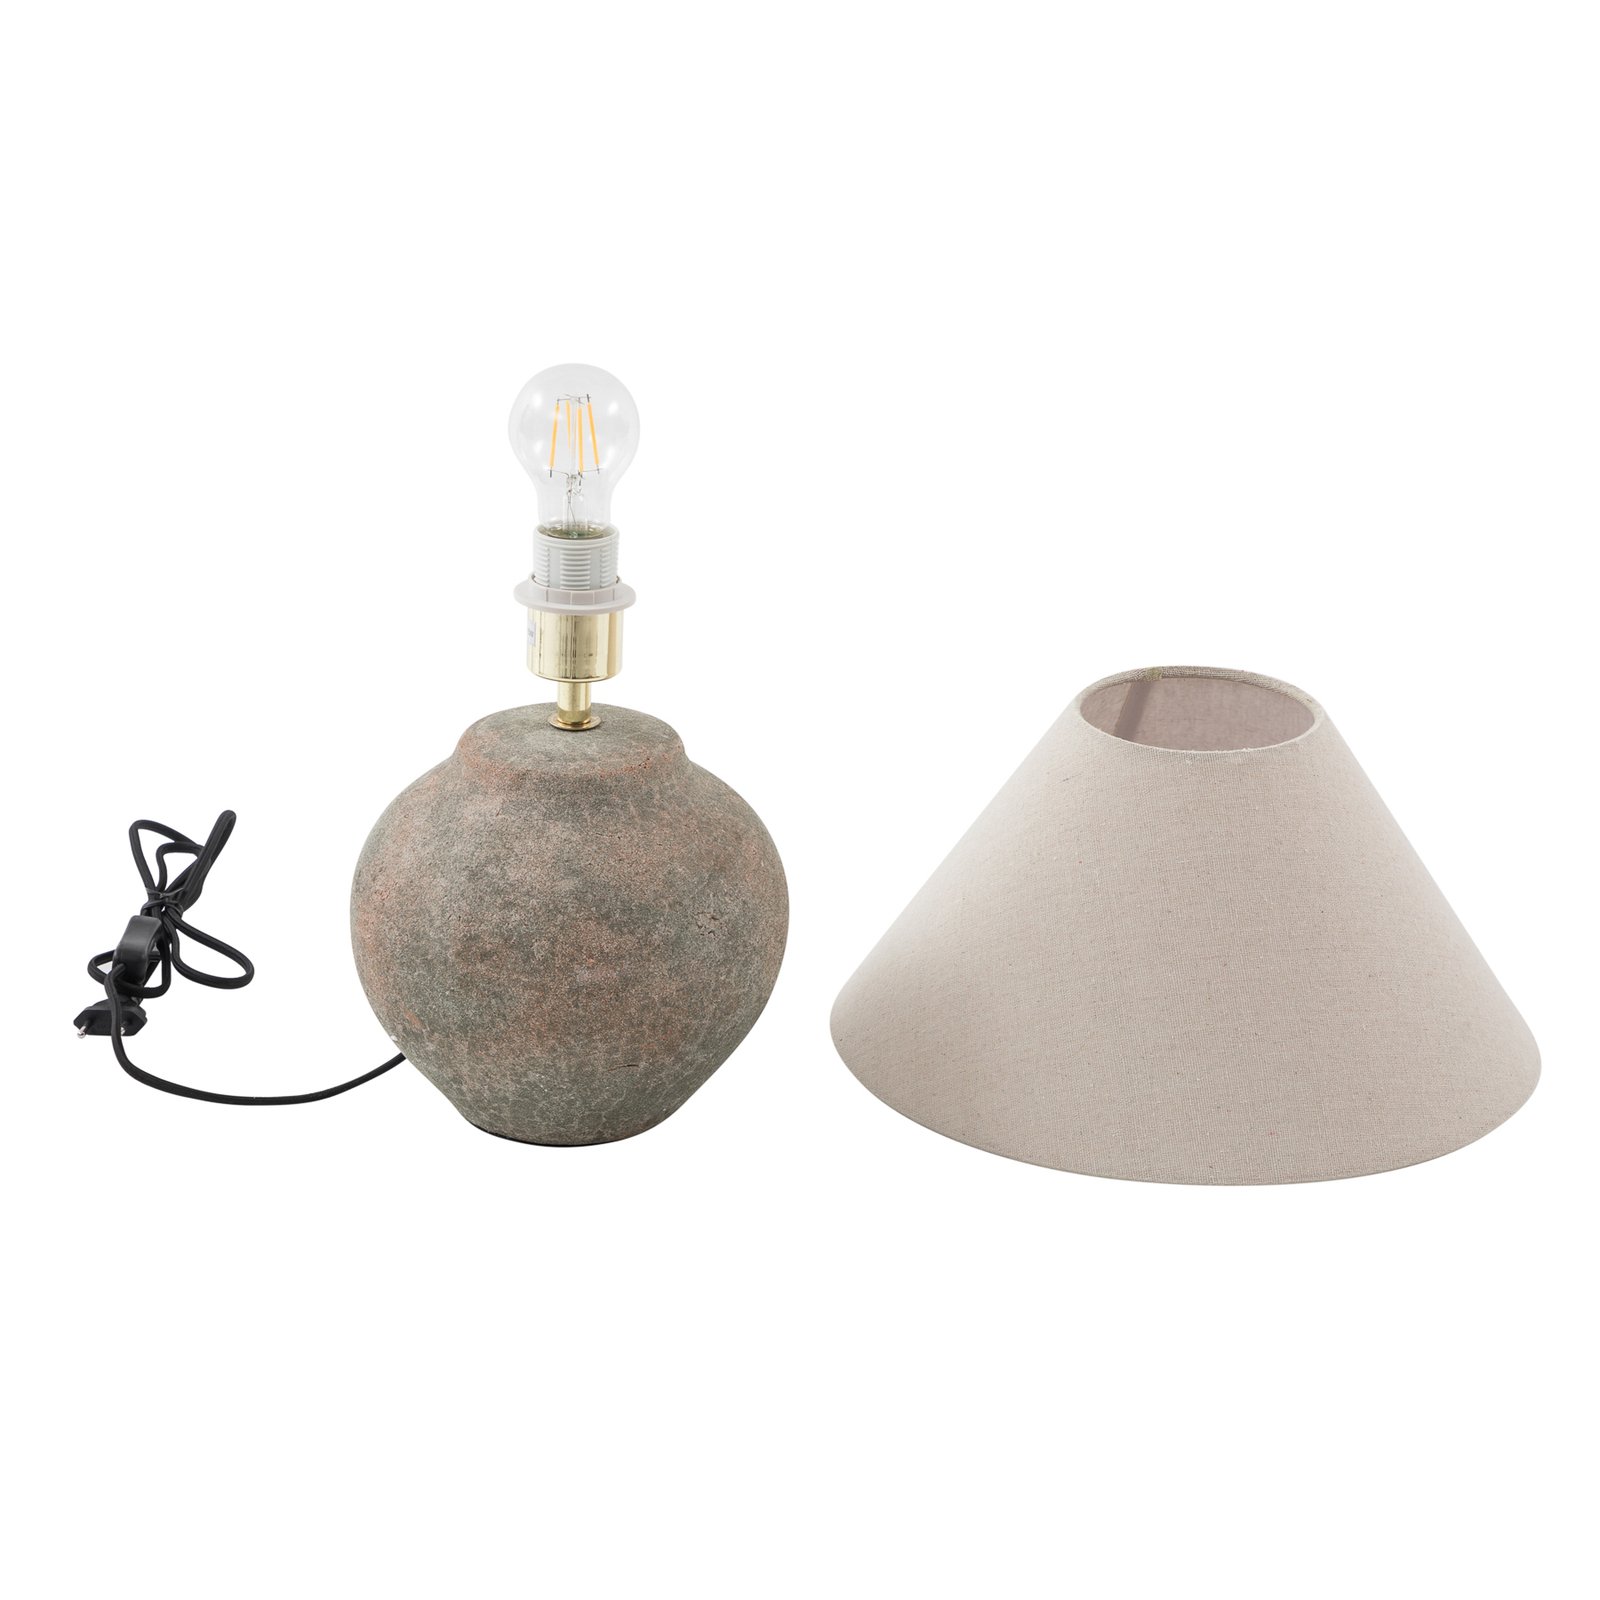 Lucande galda lampa Thalorin, augstums 39 cm, keramika